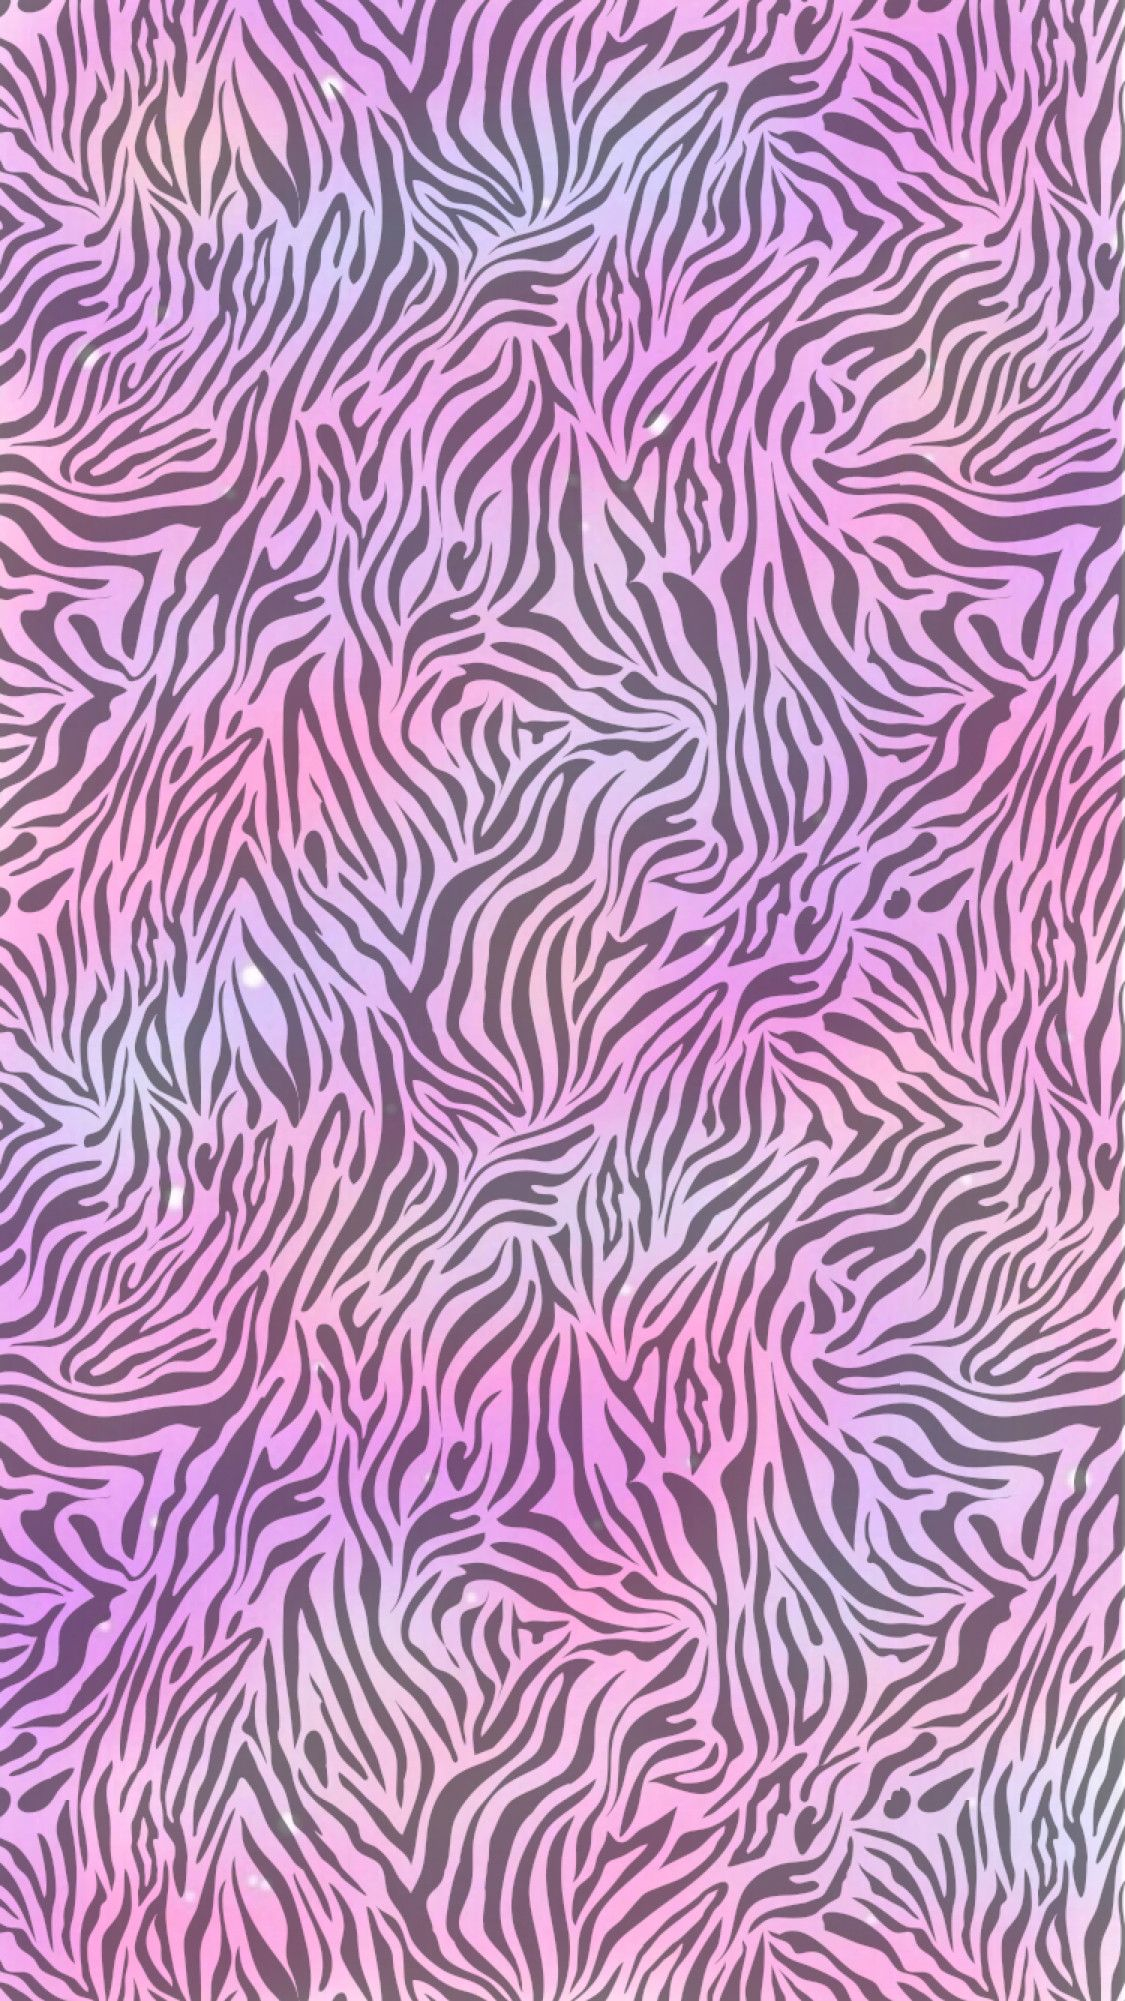 1125x2001 Zebra iPhone Wallpapers